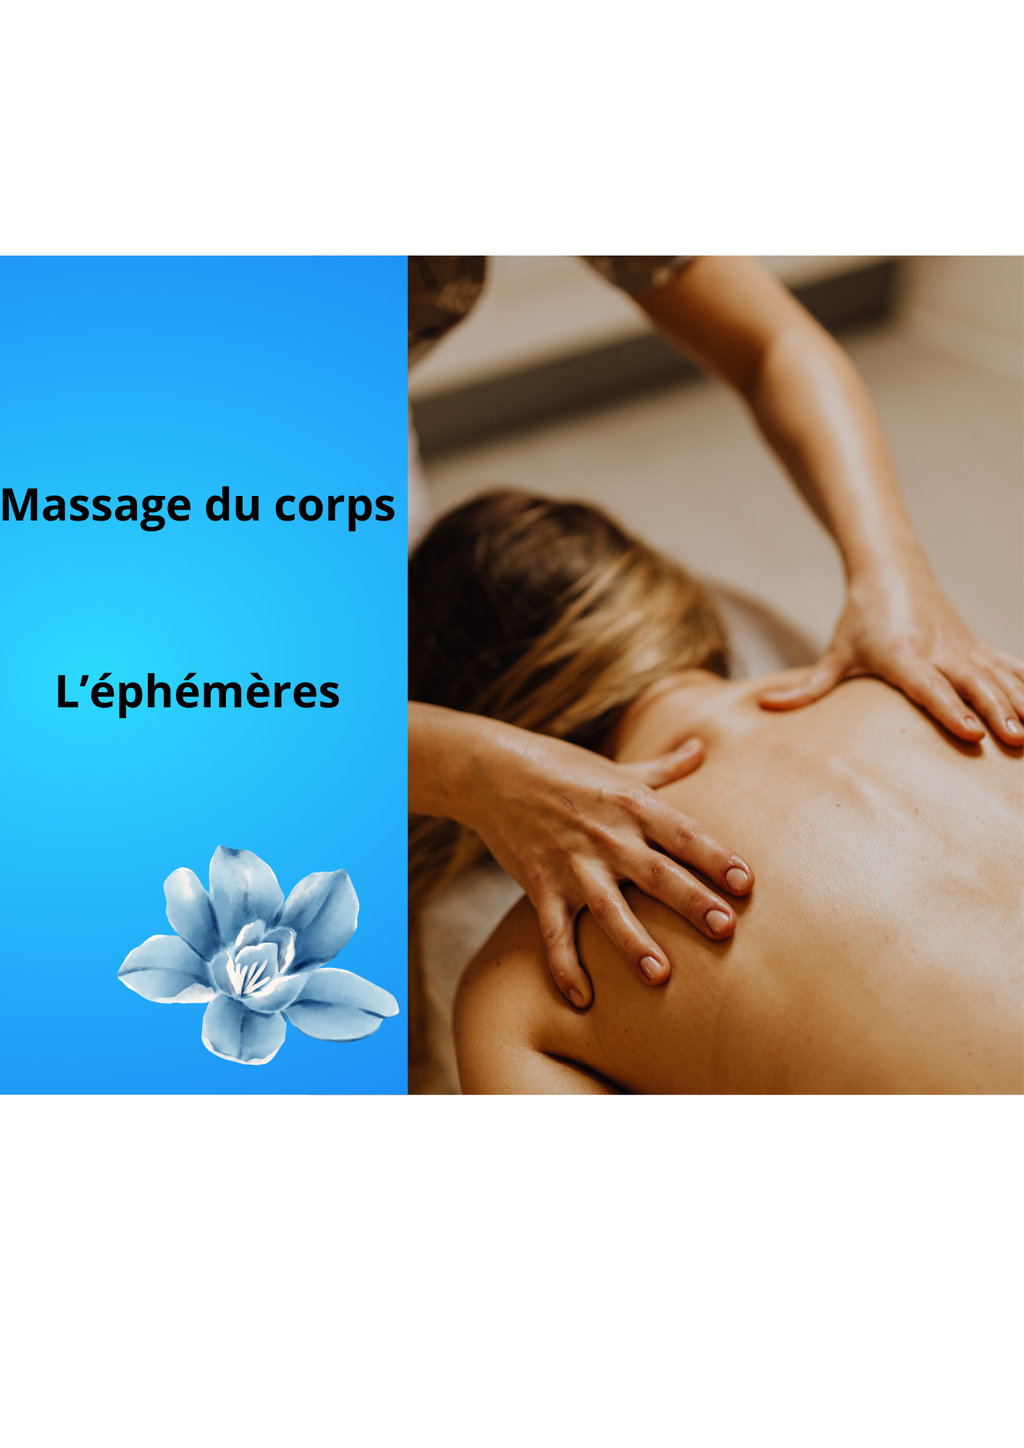 Massage du corps : L'éphémère